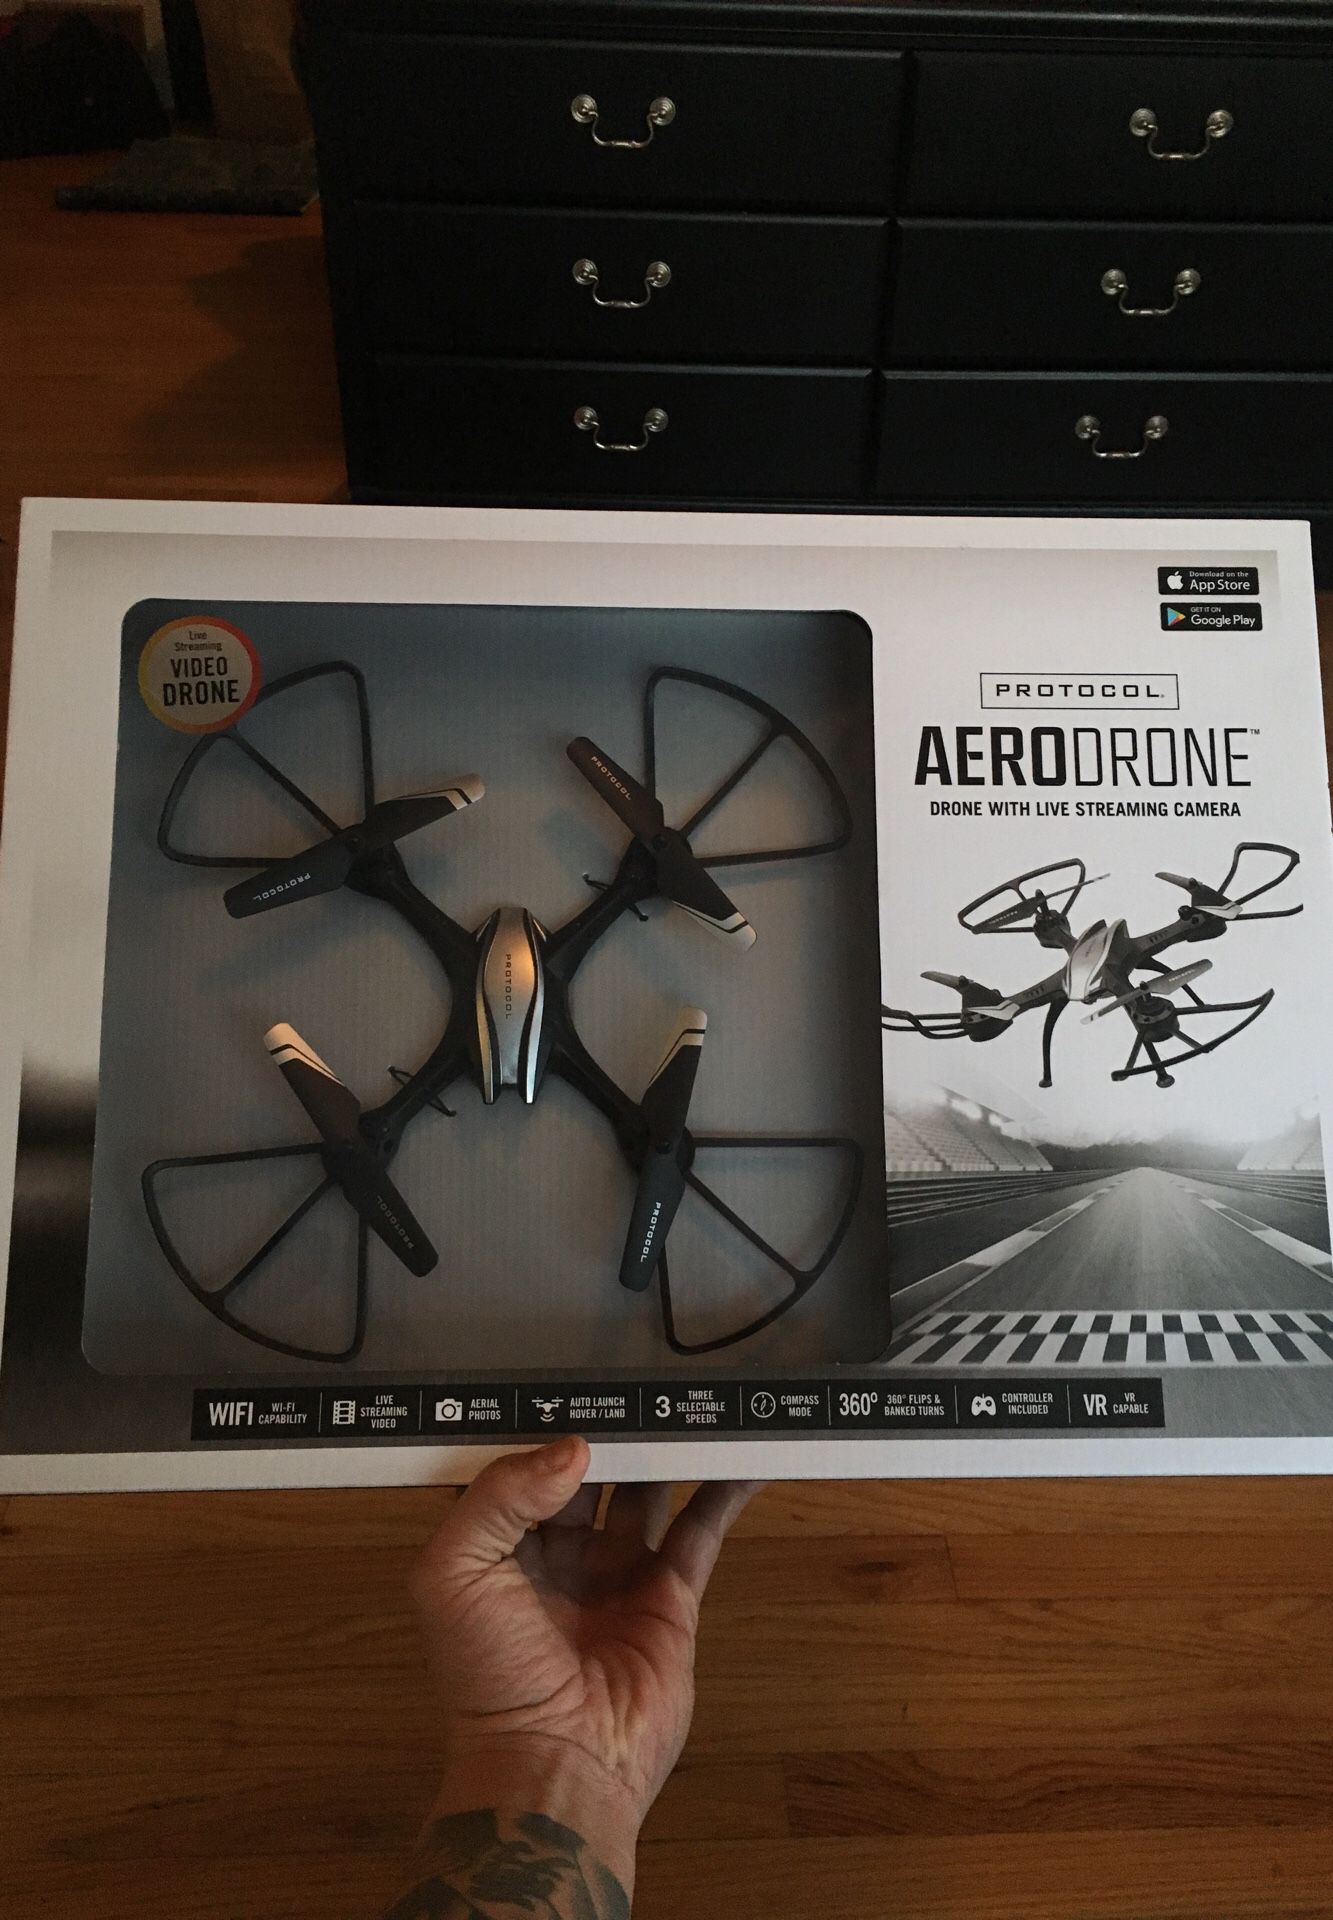 Aerodrone